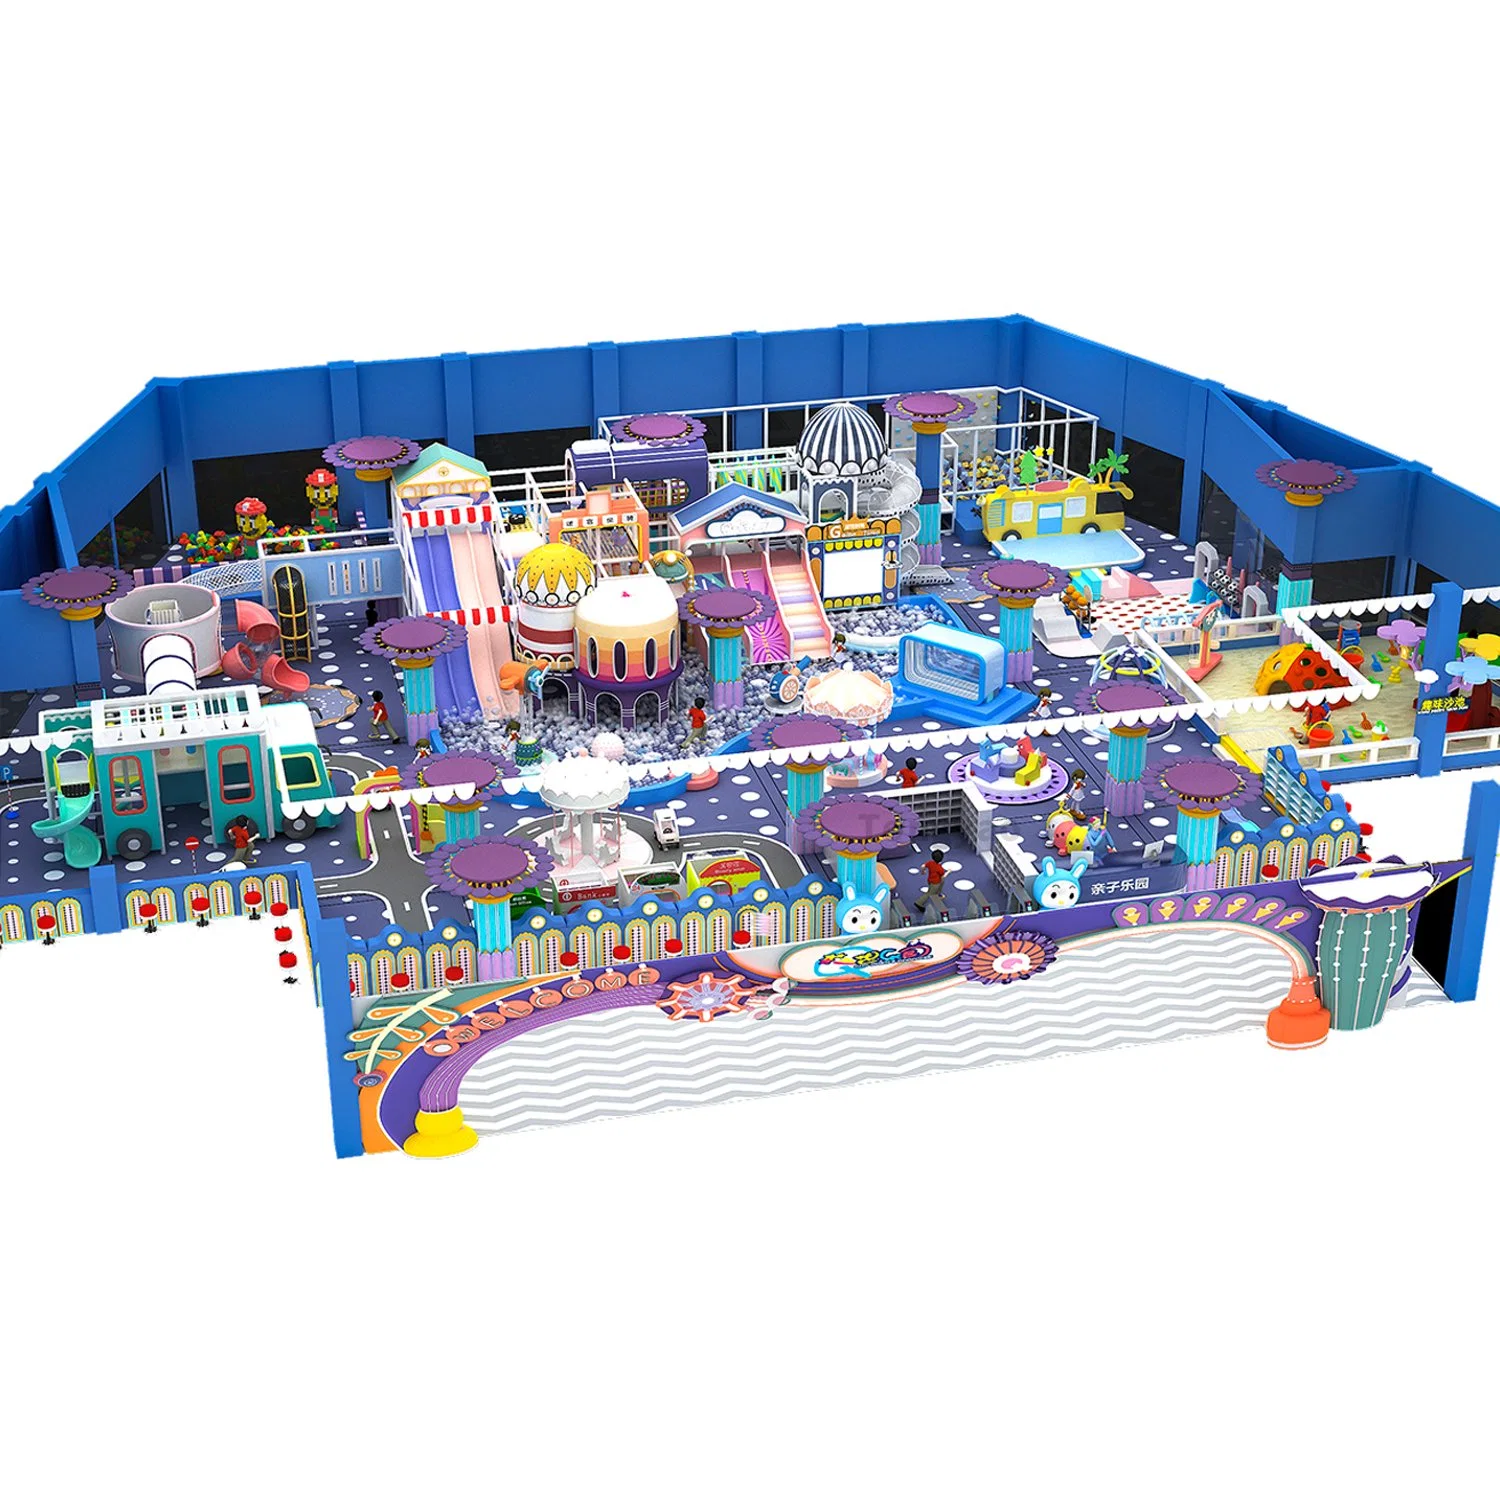 Children Toy Playground Slide Trampoline Amusement Park Soft Play Indoor Playground